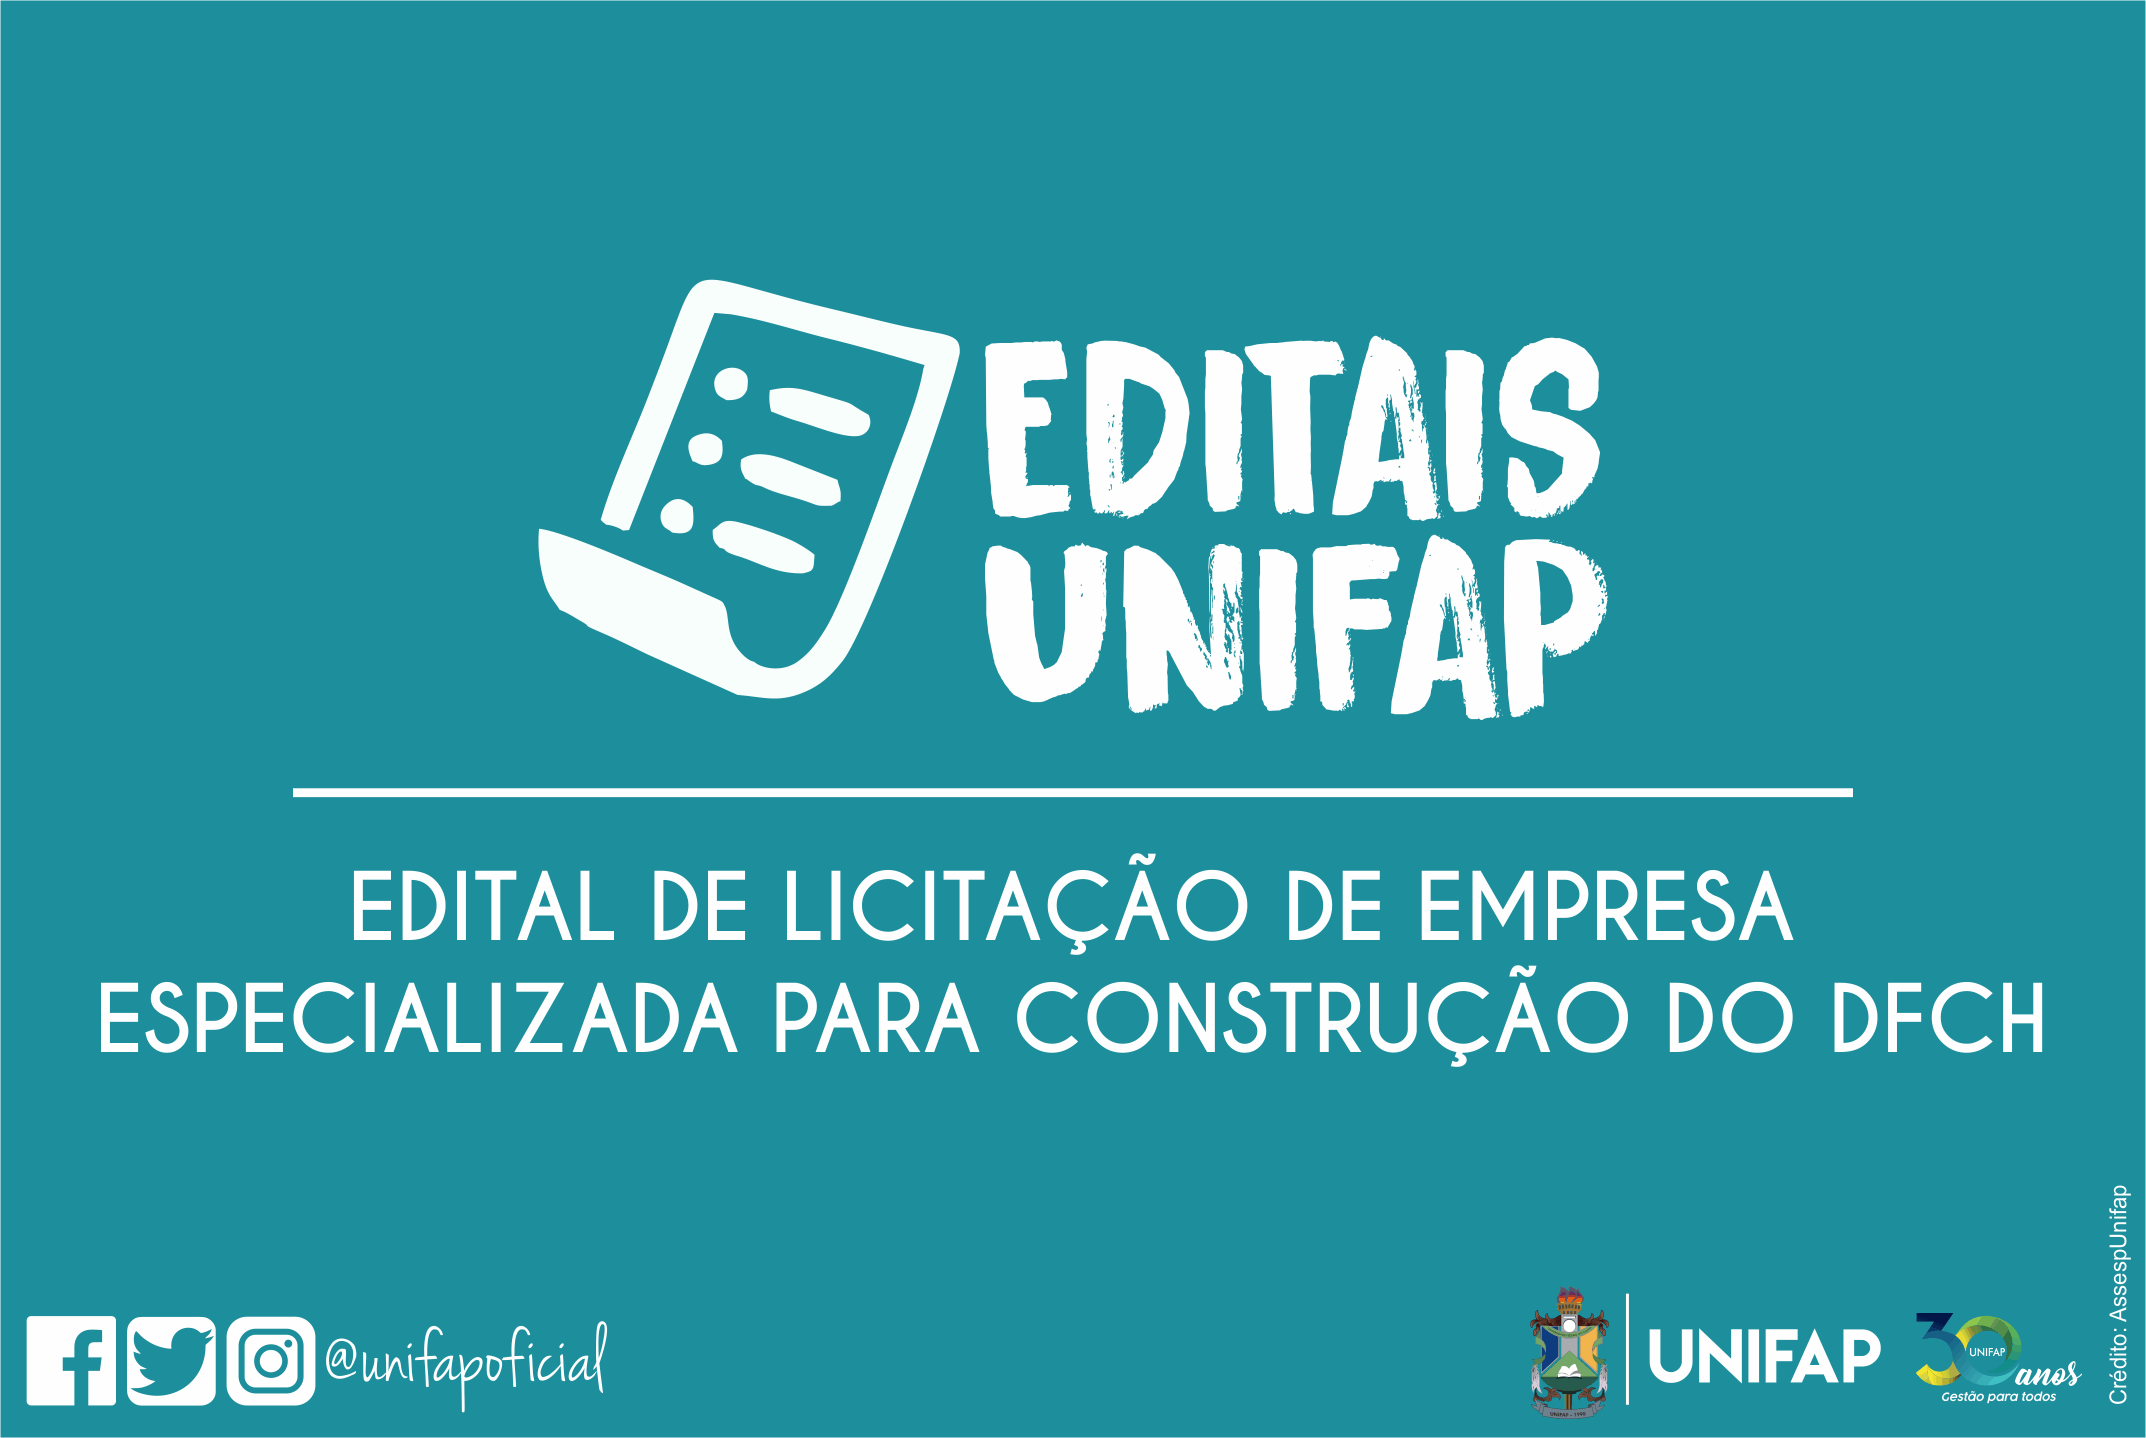 UNIFAP torna público processo de licitação para construção de prédios do DFCH